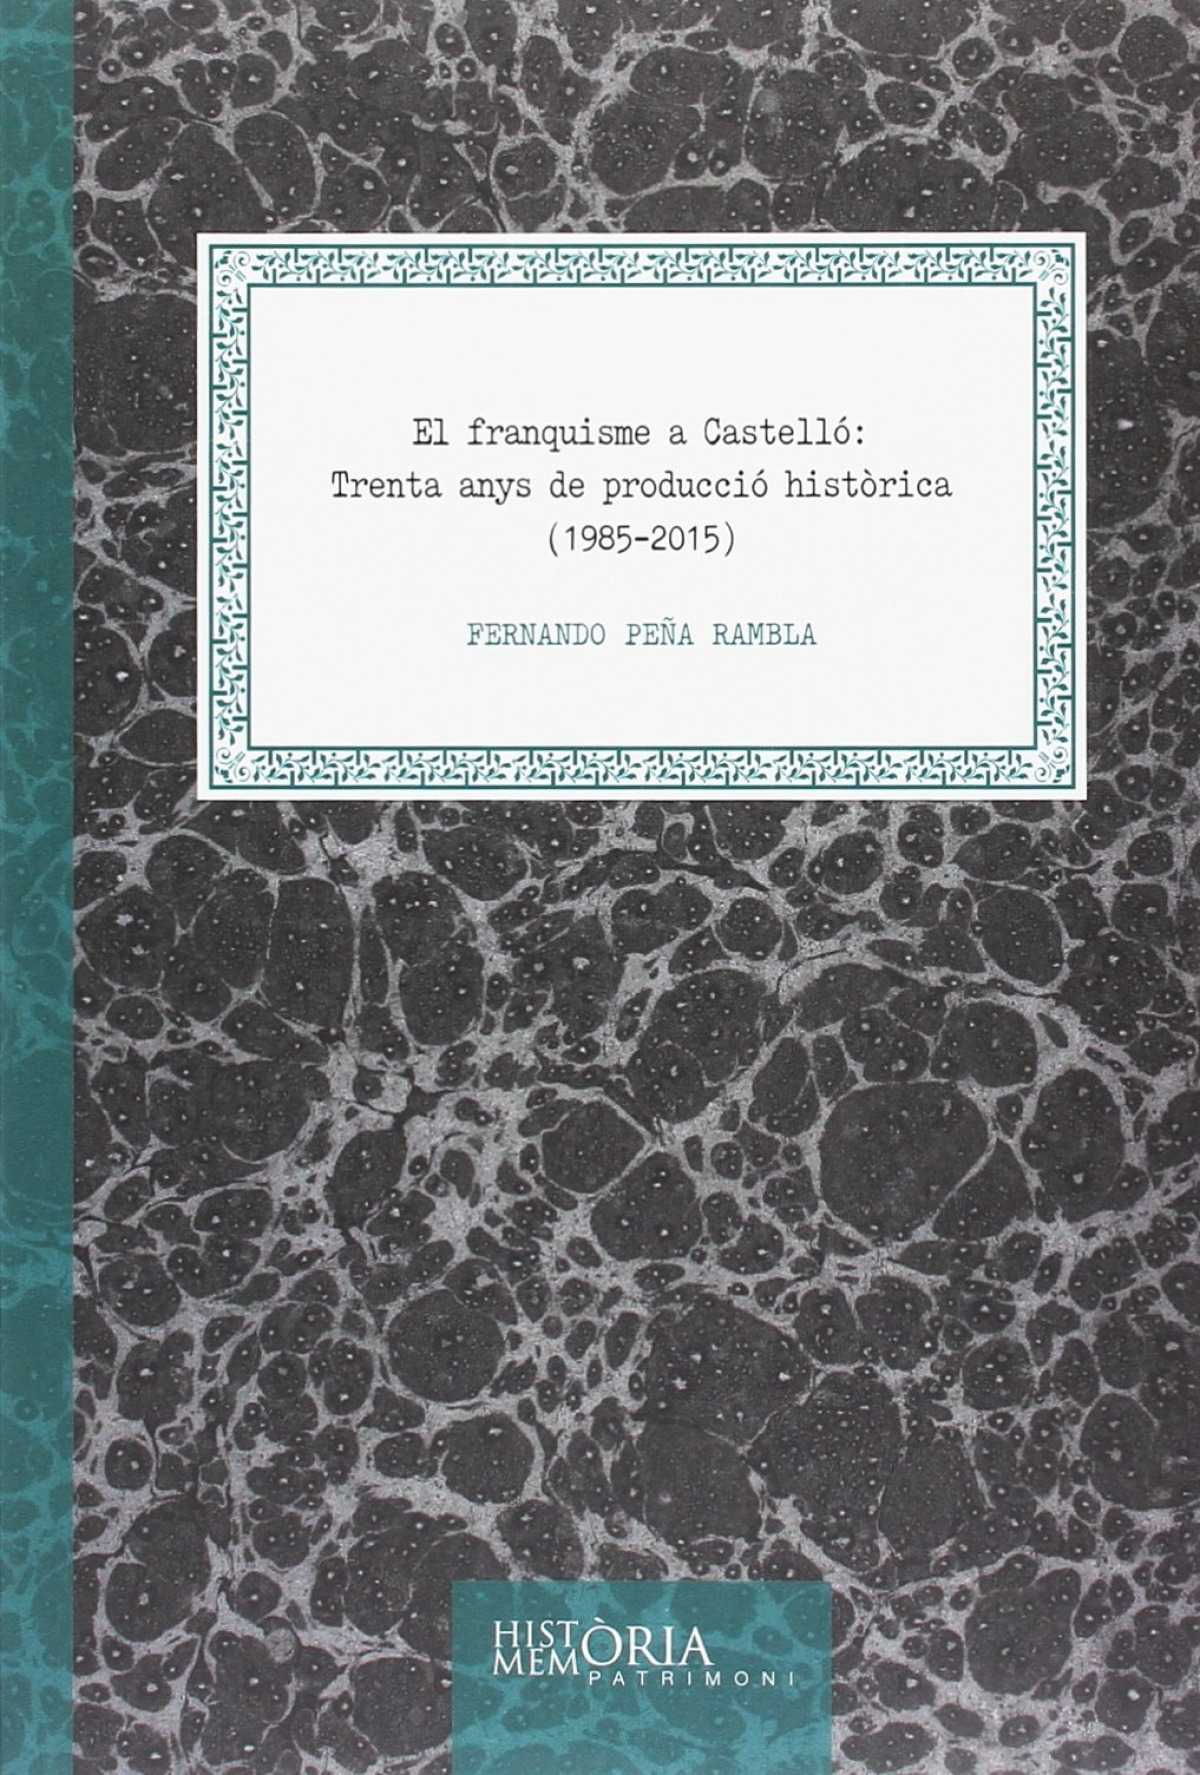 El franquisme a Castelló: Trenta anys de producció hist.rica (1985-201 - Peña Rambla, Fernando